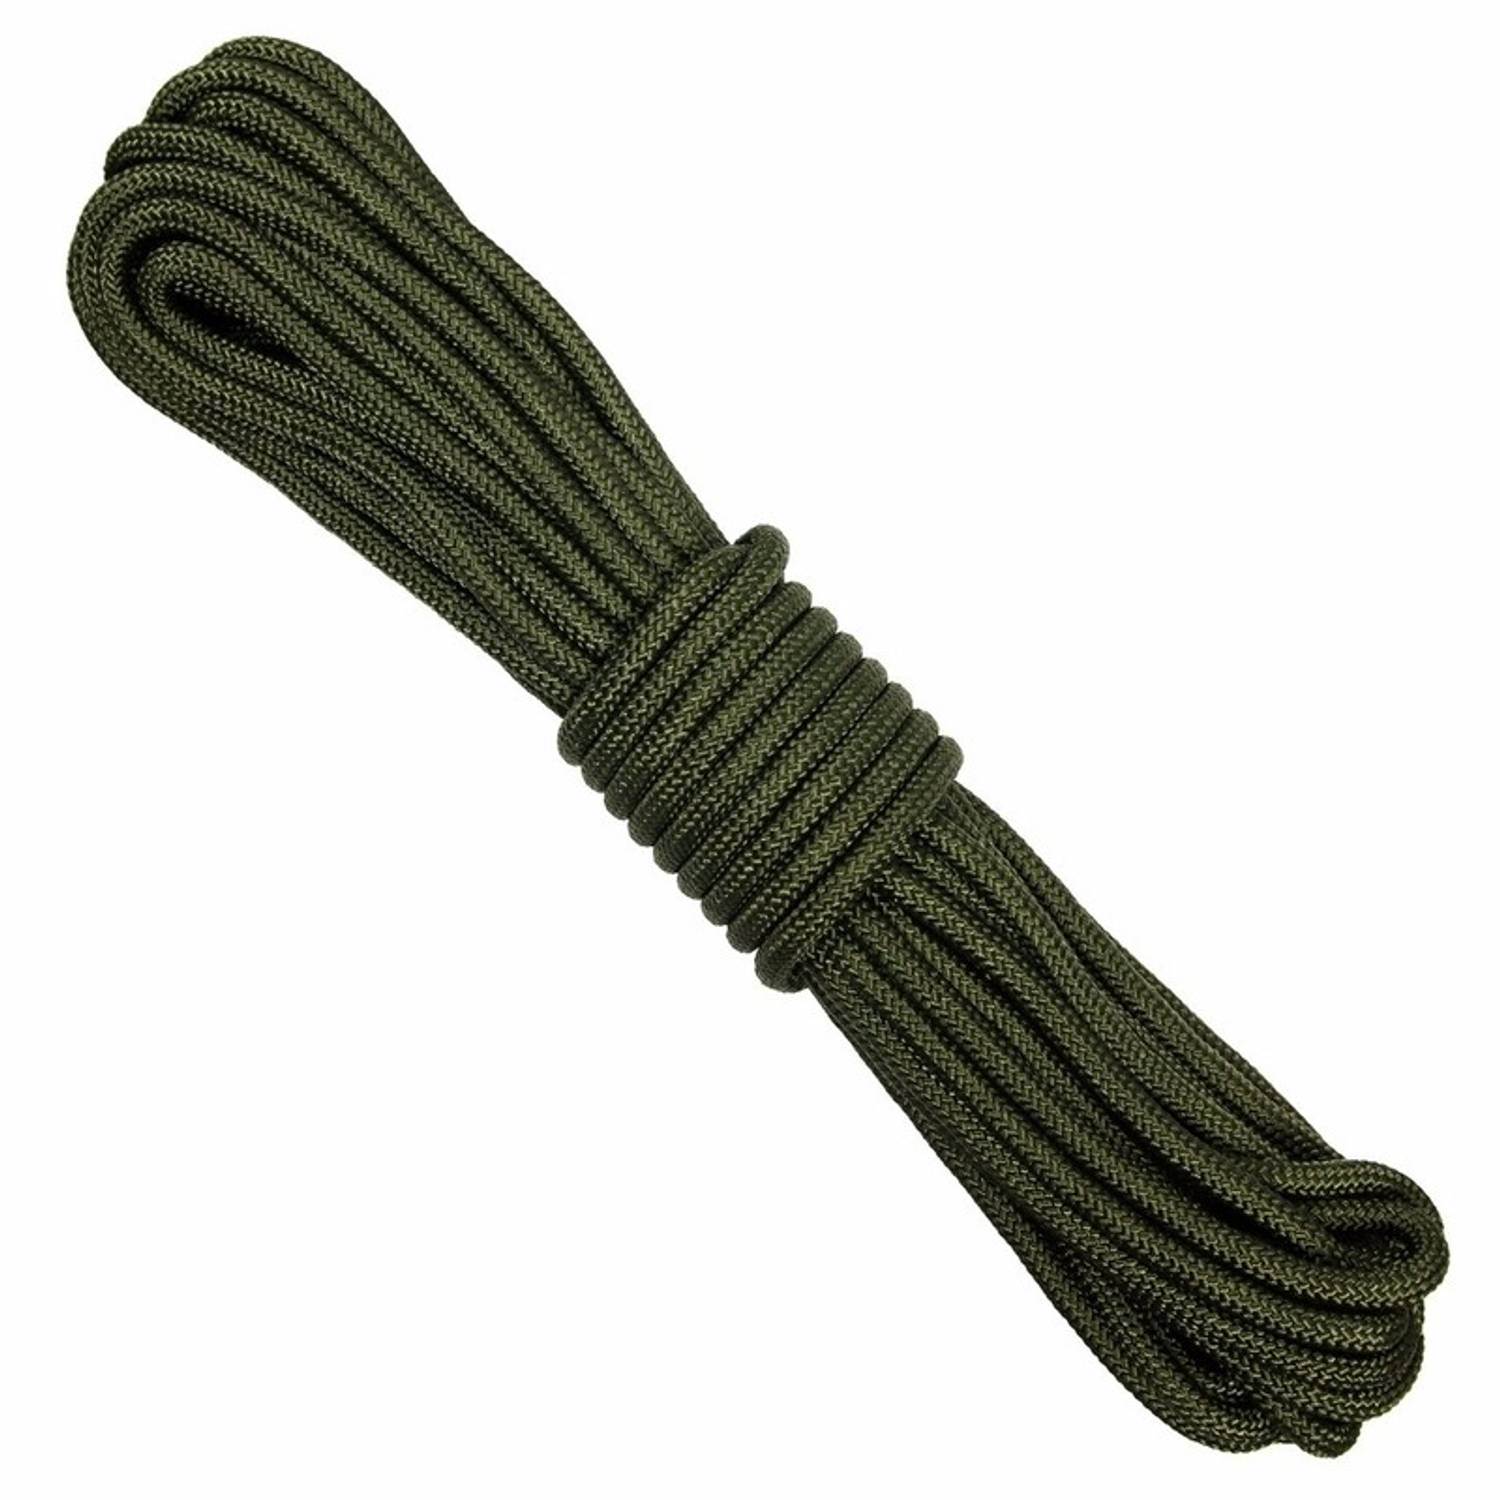 2x Dik stevig outdoor touw van 15 meter - Touw